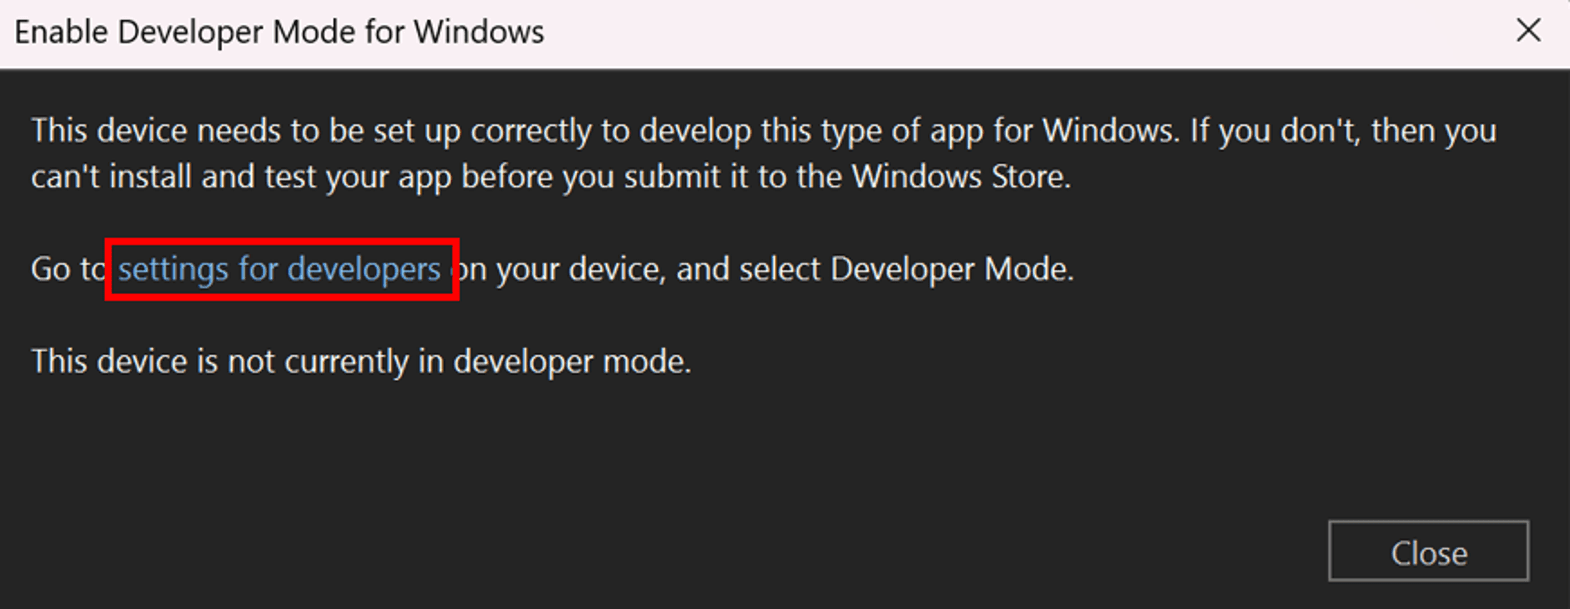 Enable Developer Mode for Windows dialog.